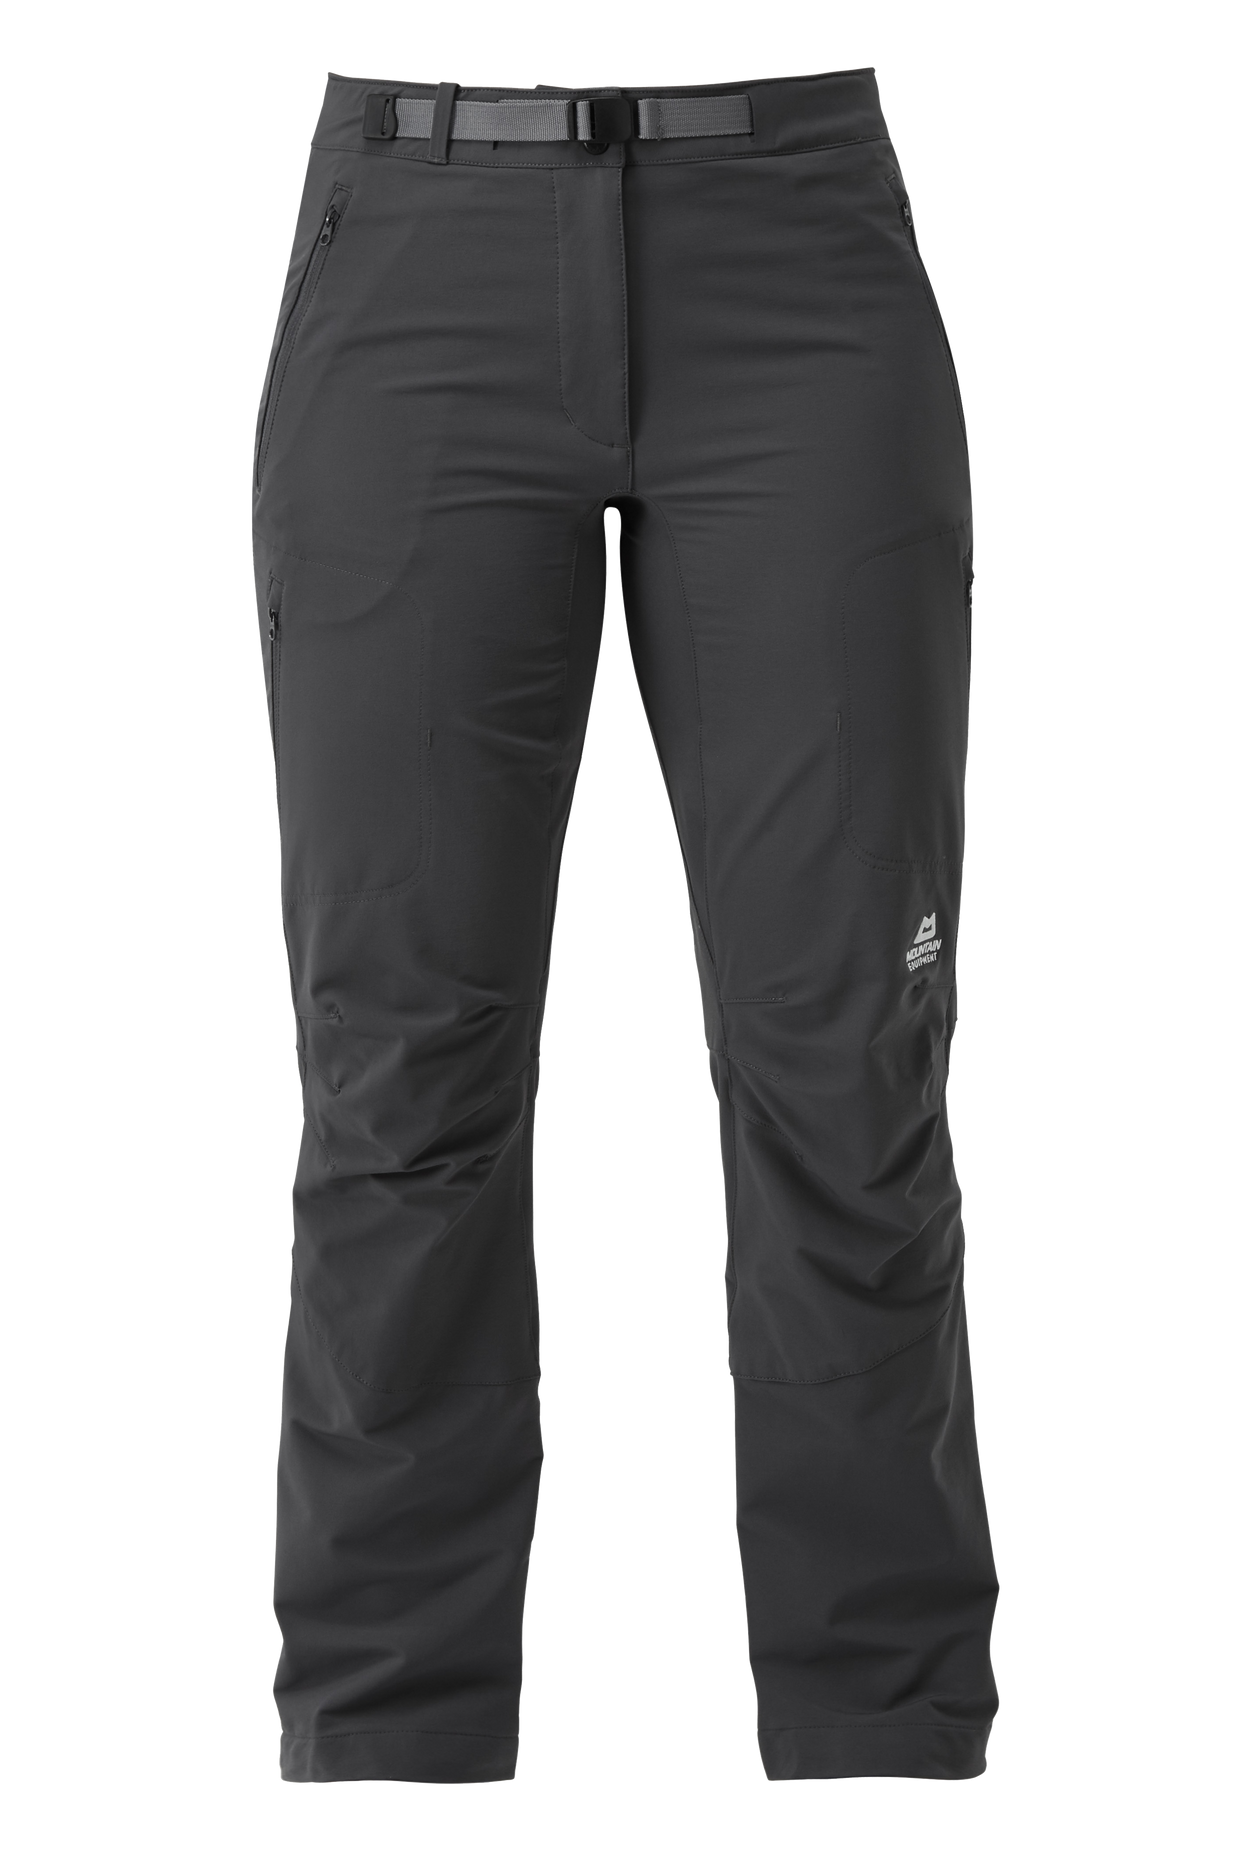 Mountain Equipment dámské softshellové kalhoty Chamois Wmns Pant - prodloužené Barva: Anvil Grey, Velikost: 18/XXL